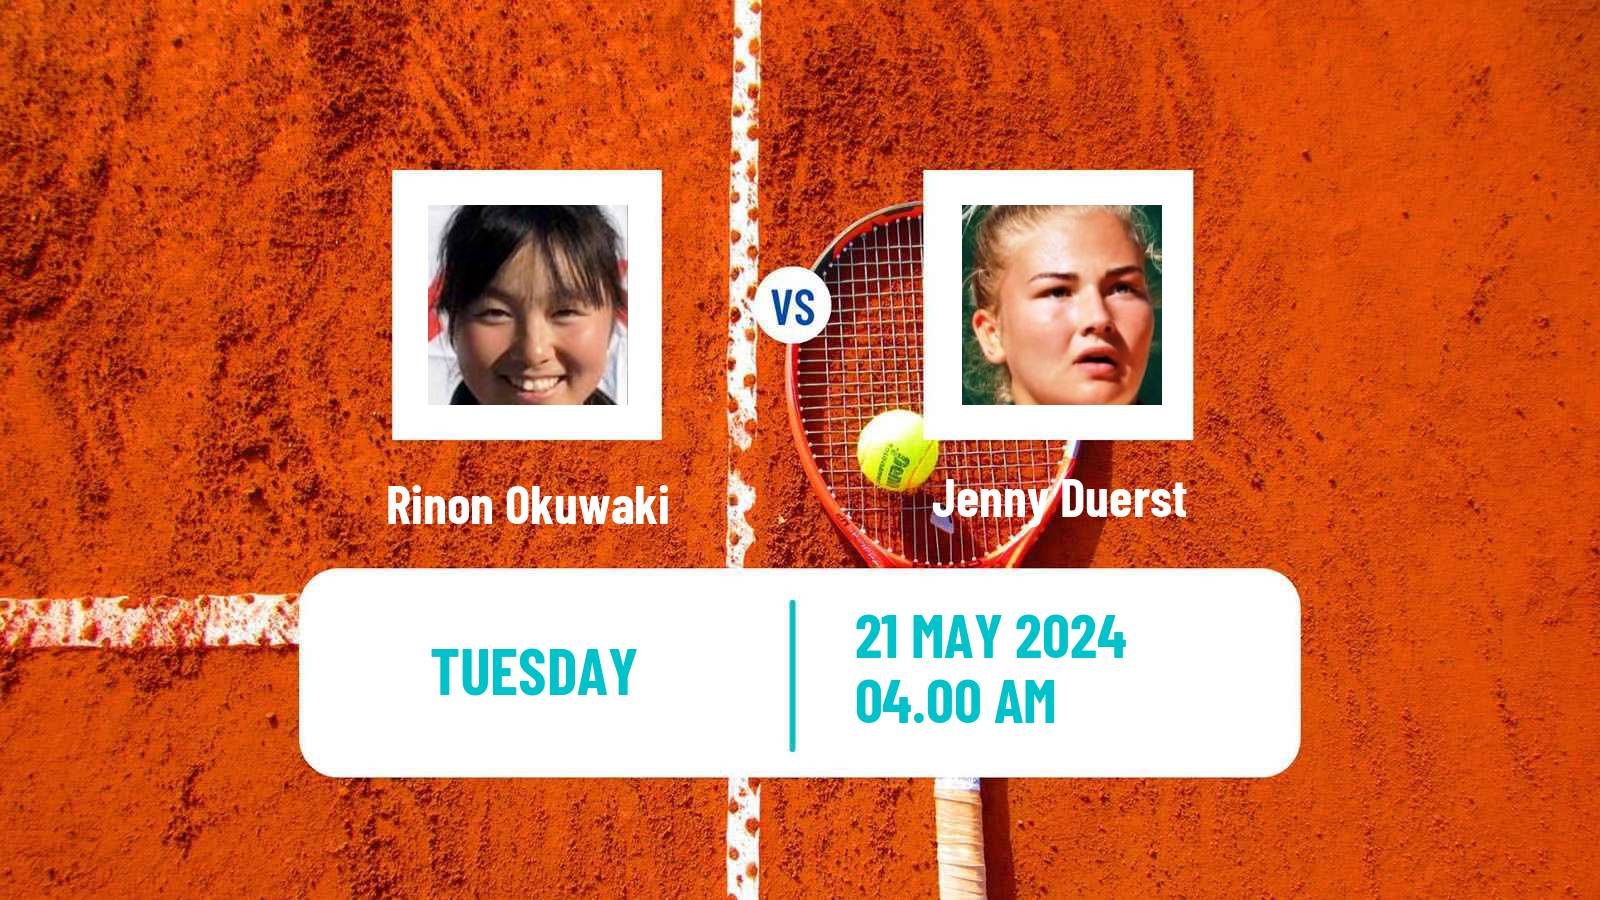 Tennis ITF W50 Otocec Women Rinon Okuwaki - Jenny Duerst